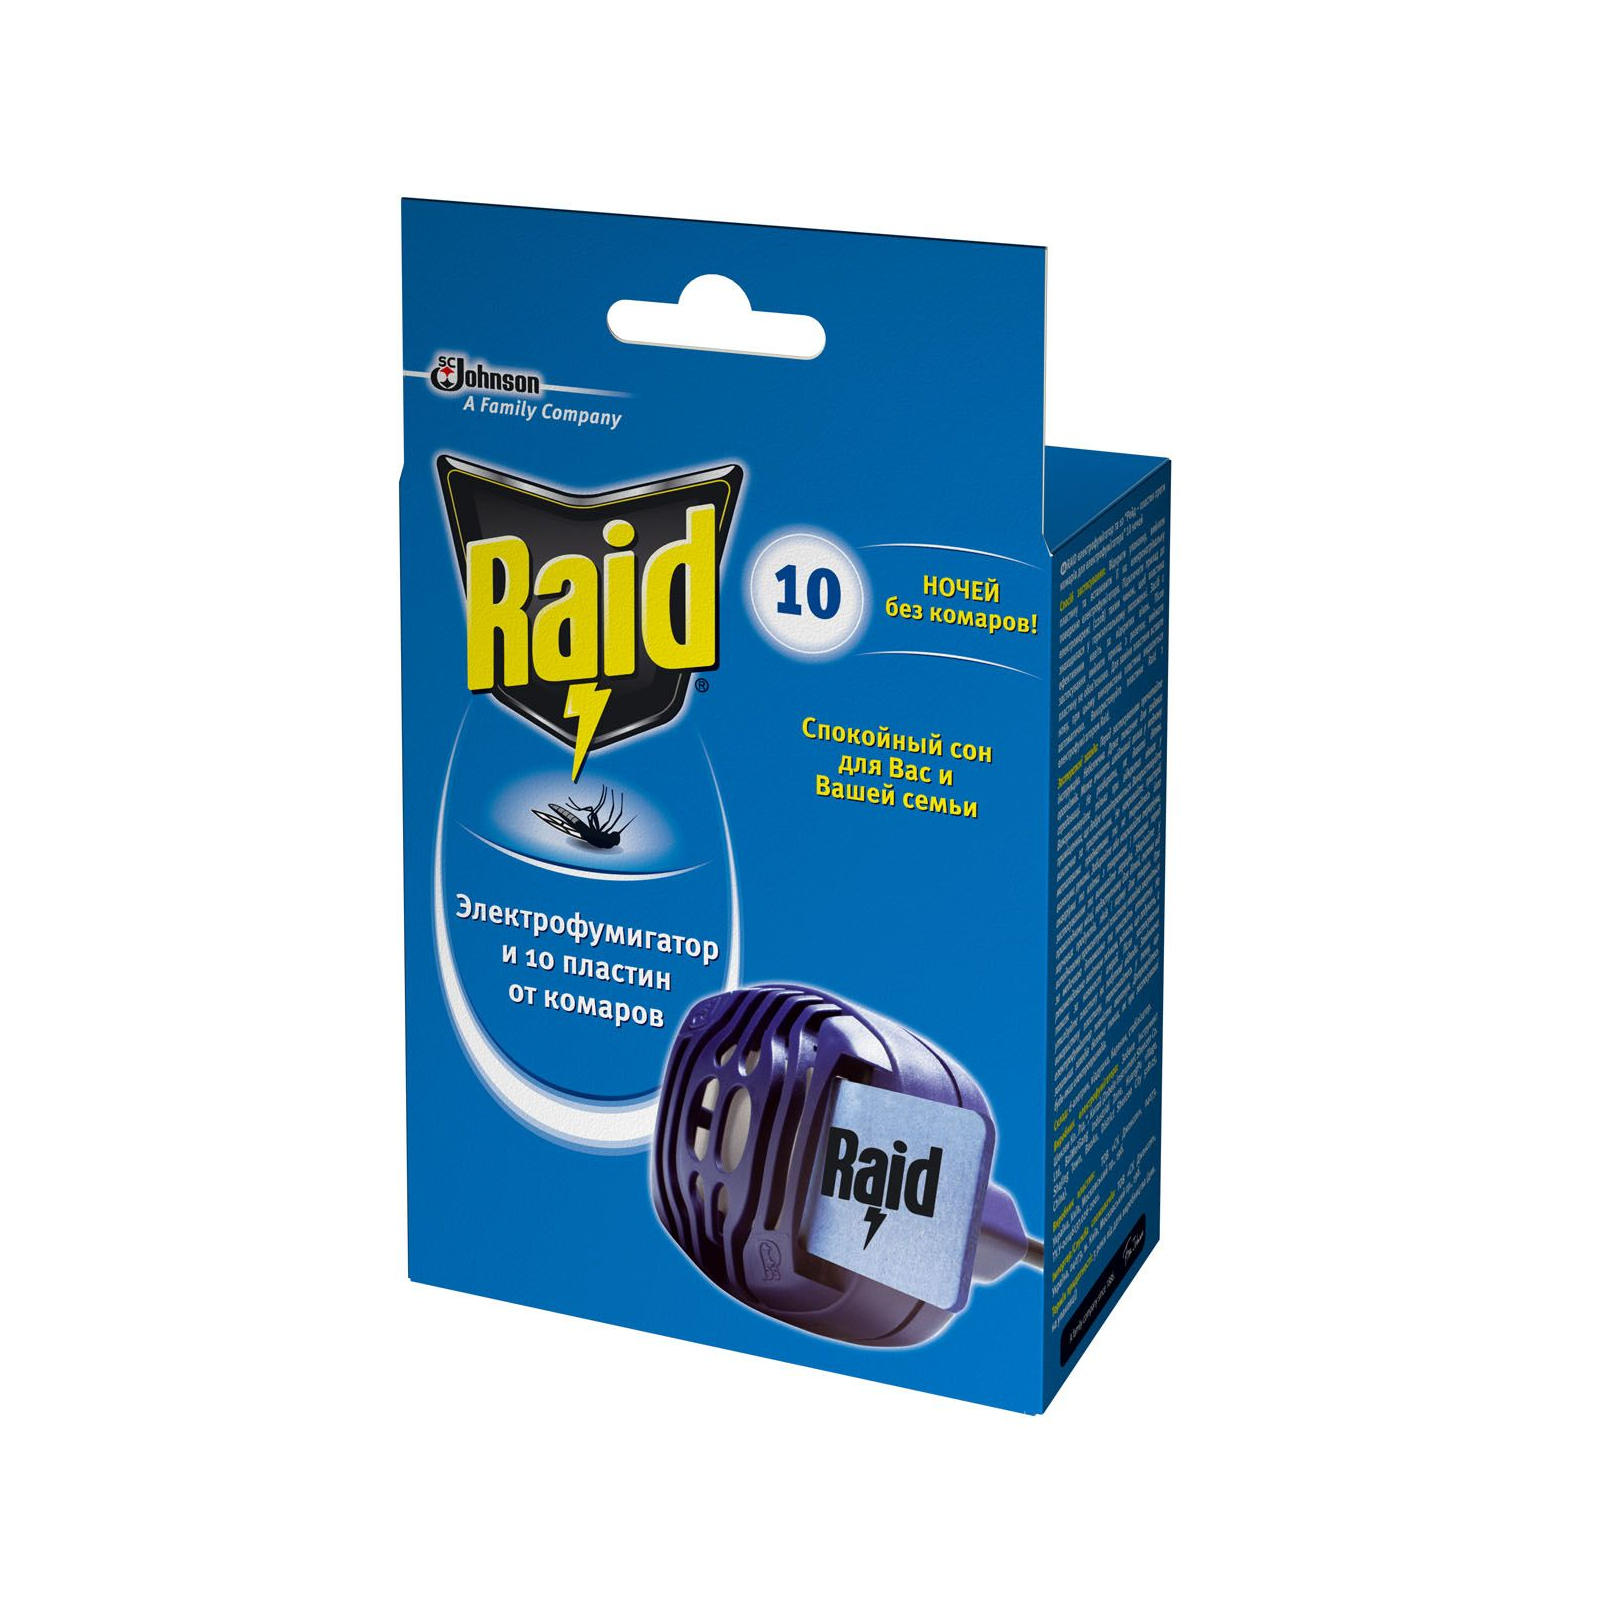 Фумигатор Raid в комплекте с 10 пластинами (4620000430926)